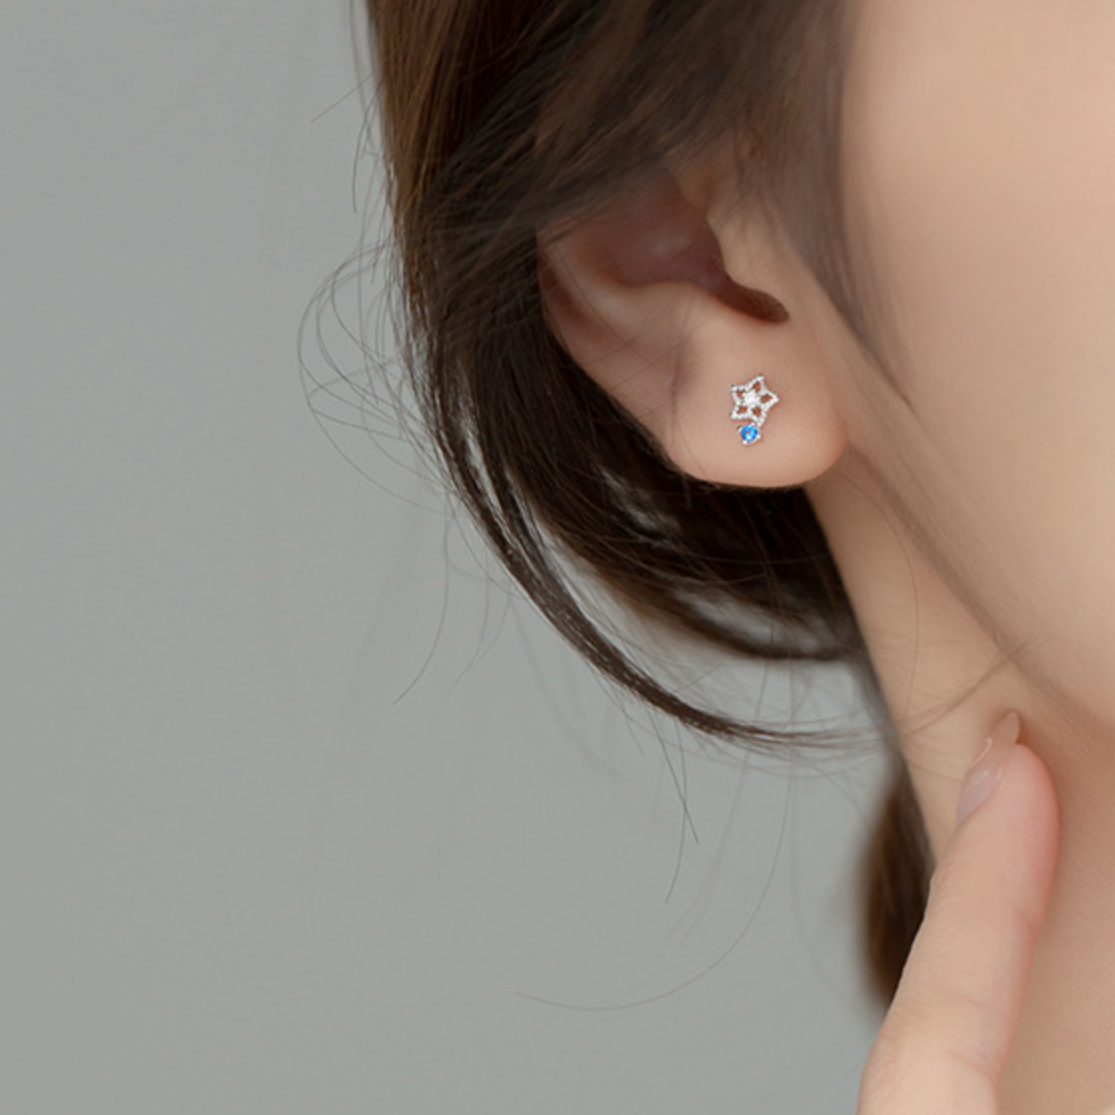 Crystal Star Stud Earrings